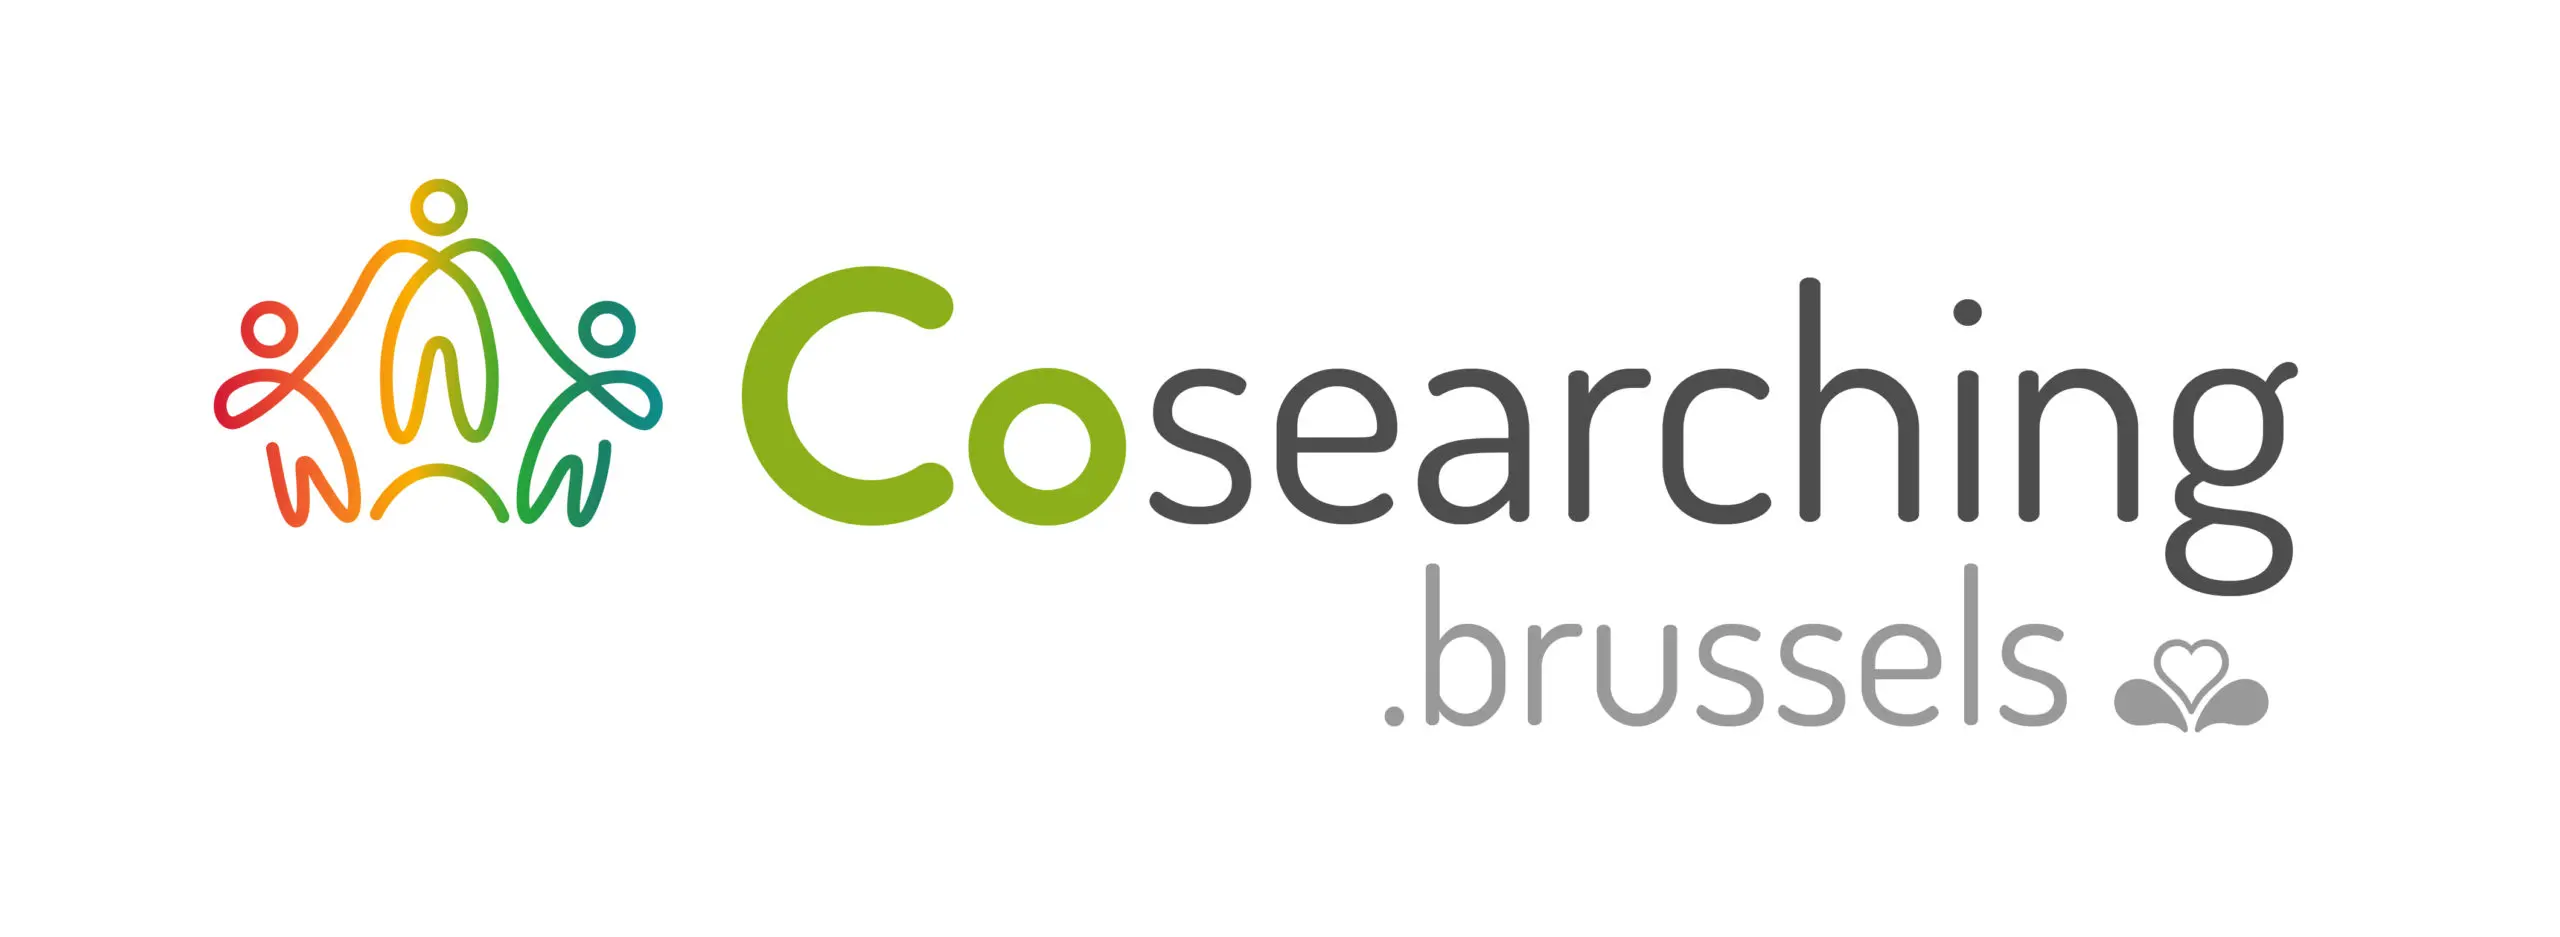 Premier Cosearching Center à Bruxelles